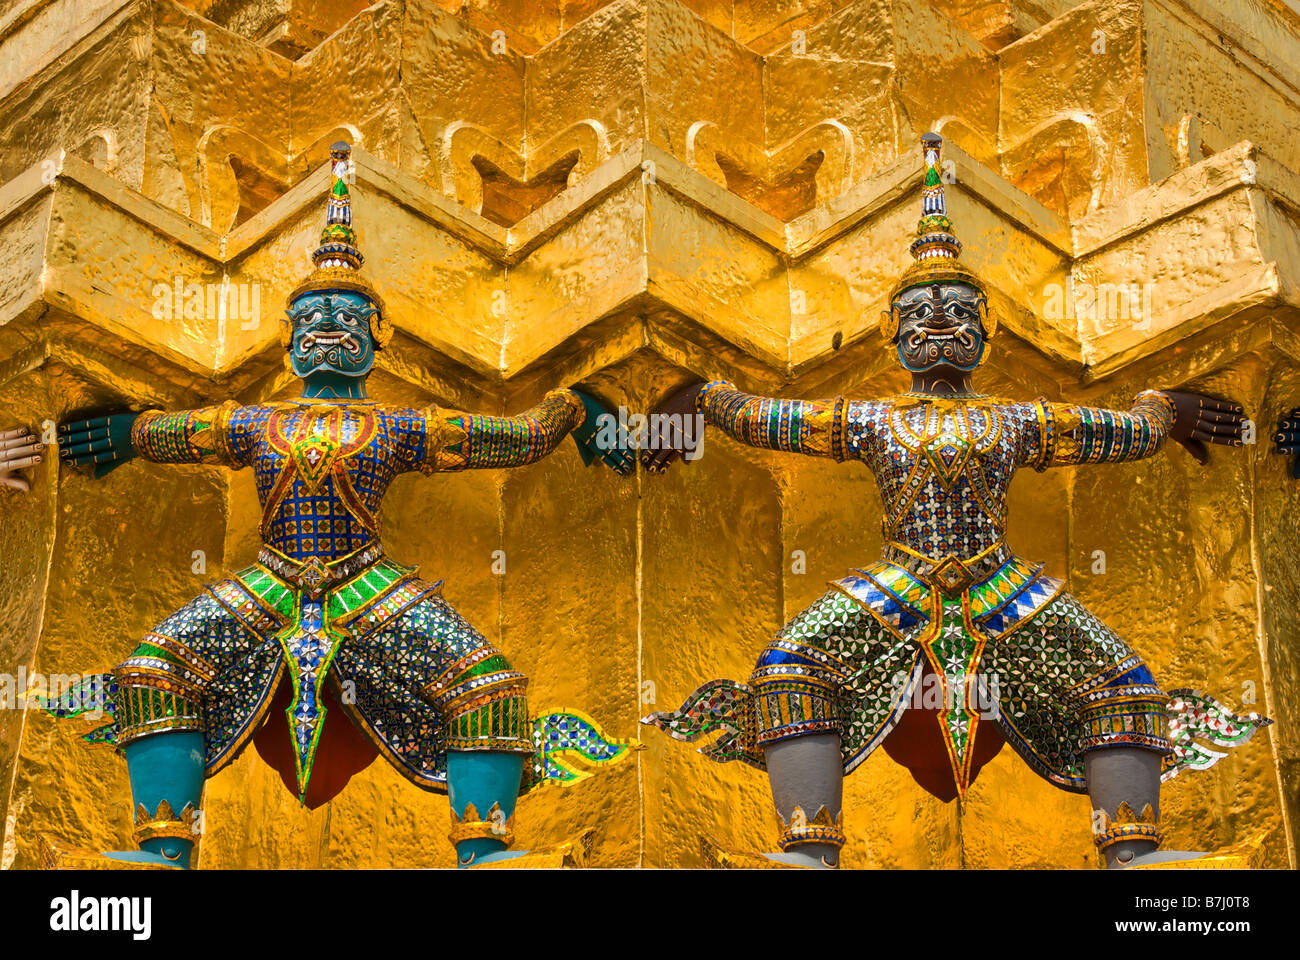 Yaksha mythischen Dämonen unterstützt einen goldenen Chedi - Wat Phra Kaew und dem Grand Palace in Bangkok Zentralthailand Stockfoto